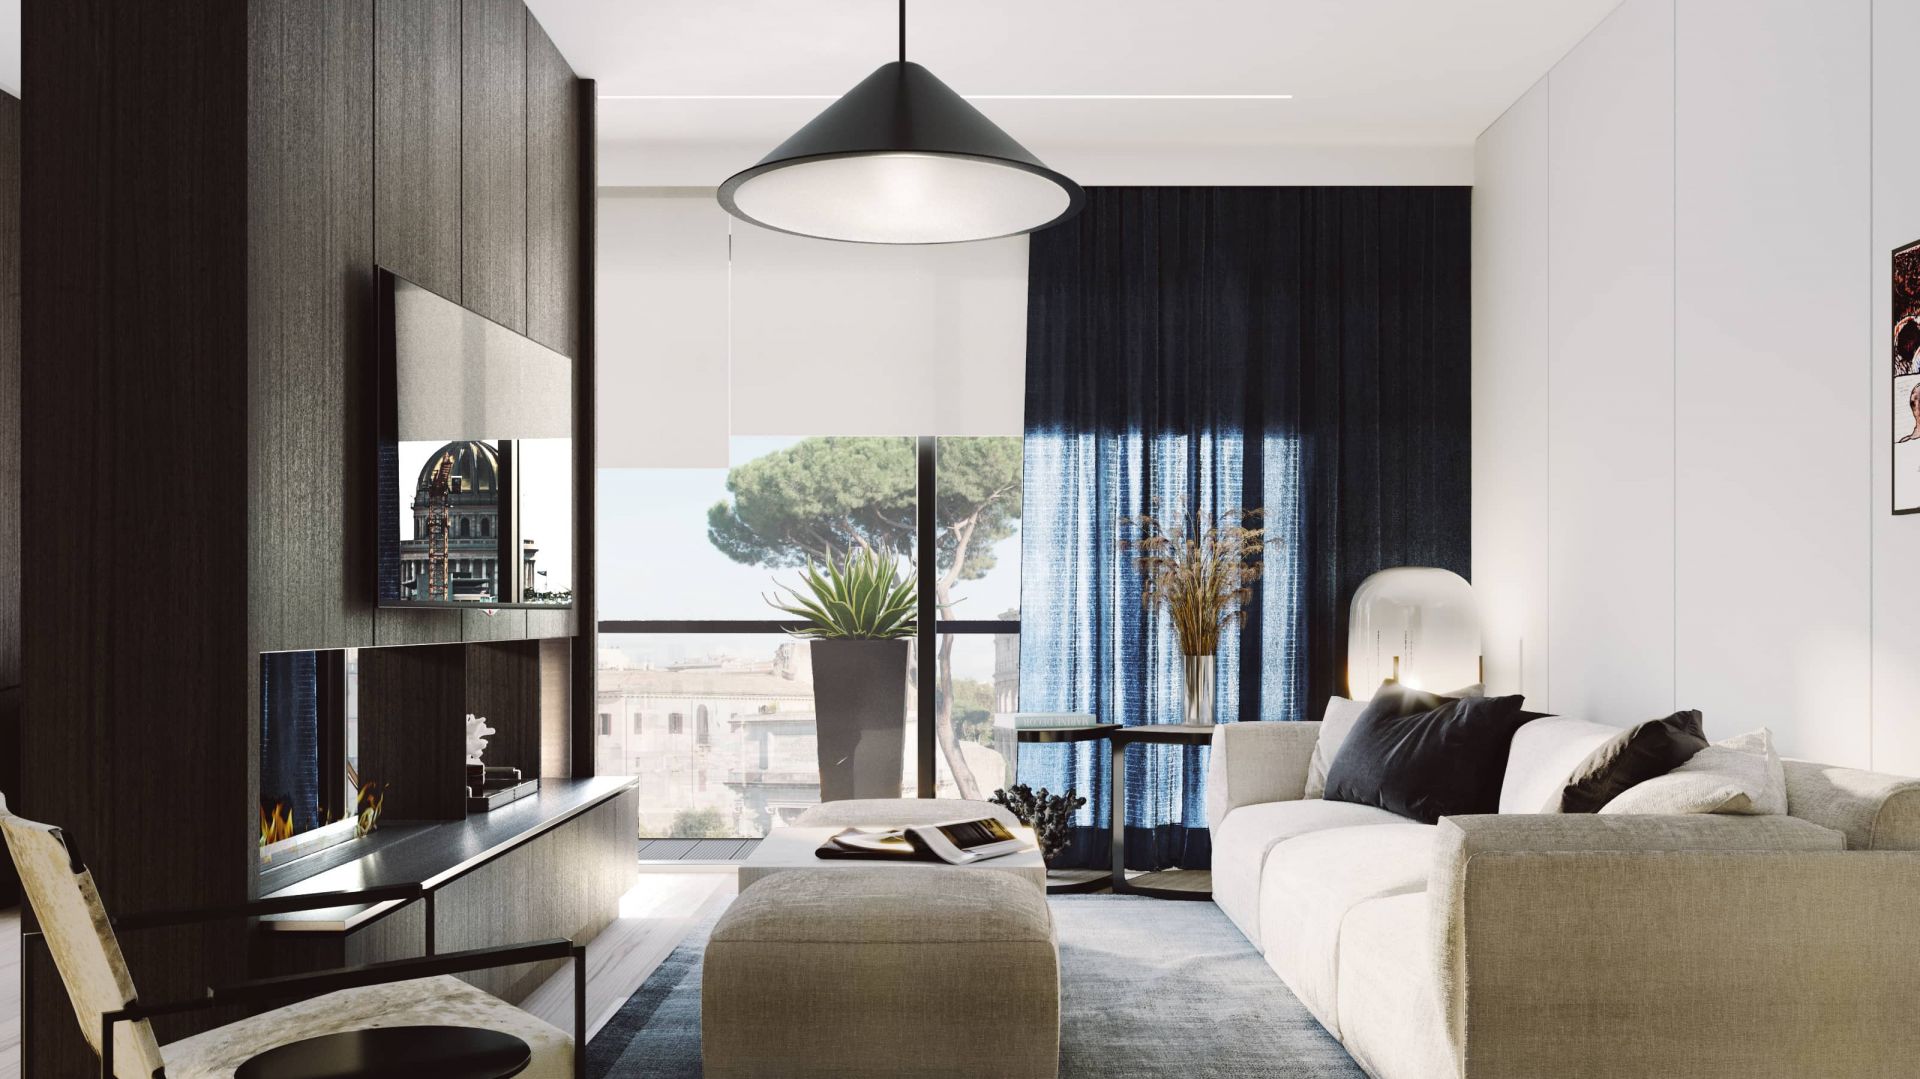 Wakacyjny apartament we włoskim klimacie. Zobacz eleganckie wnętrze w sercu Rzymu